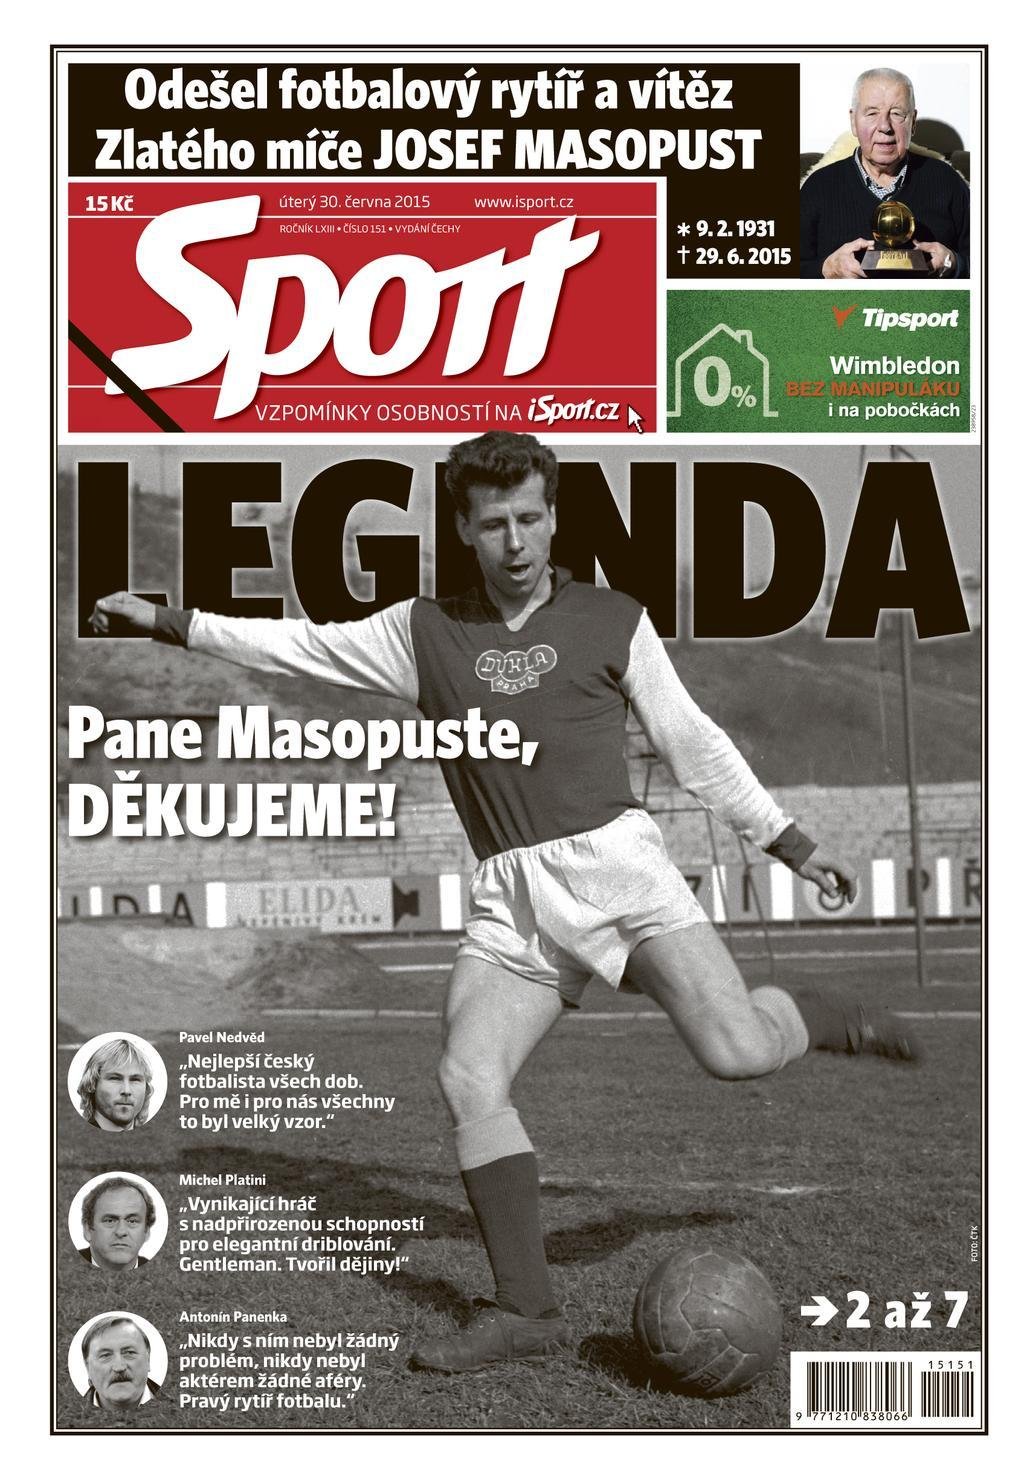 Úterní deník Sport přináší vzpomínky na Josefa Masopusta na šesti stranách...